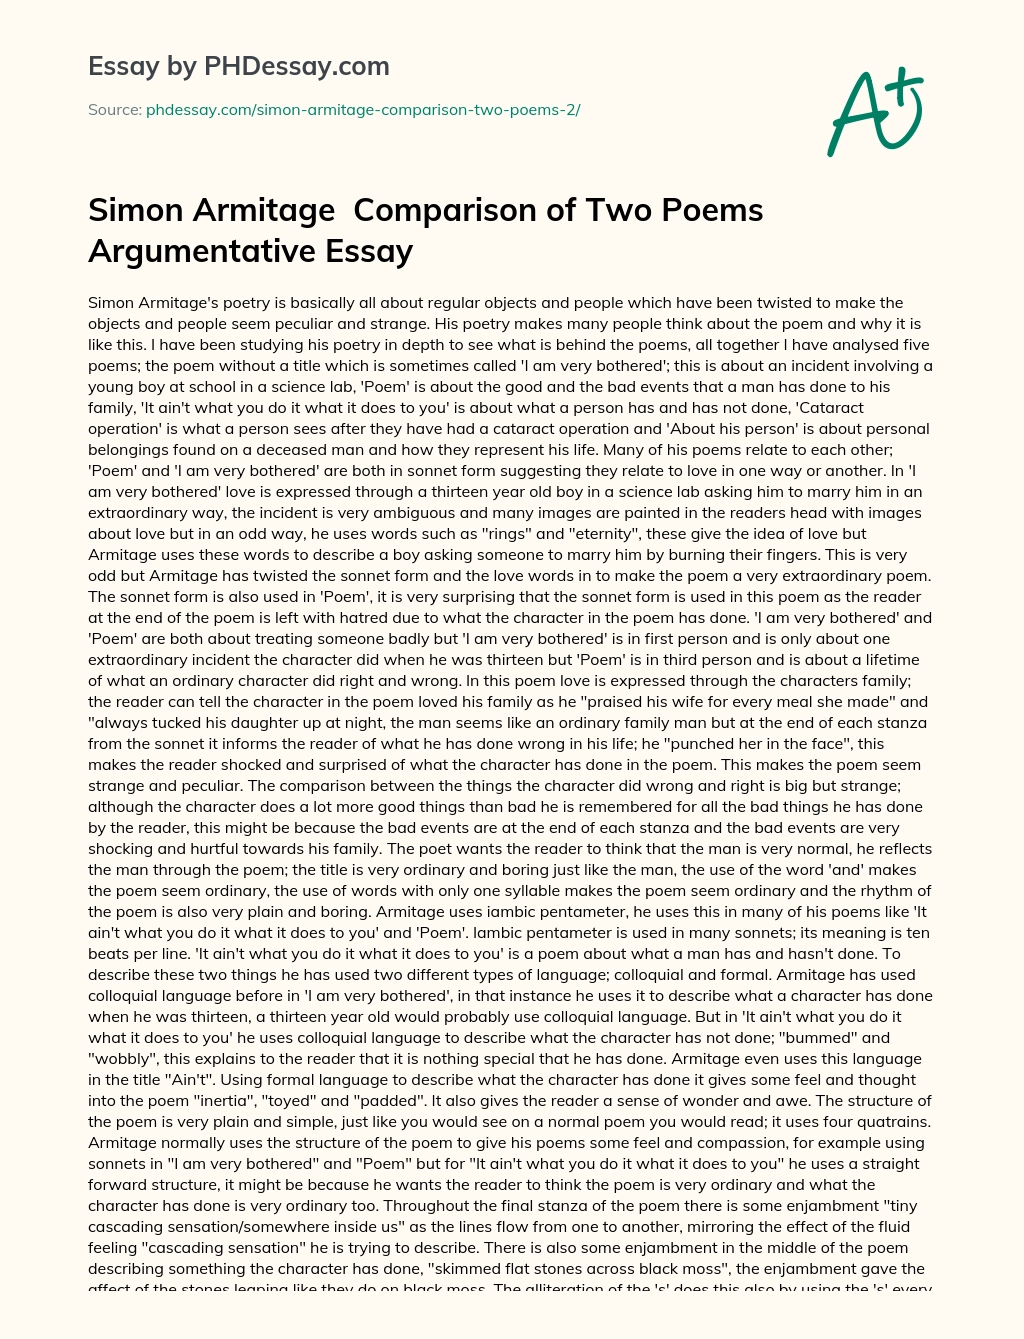 Simon Armitage  Comparison of Two Poems Argumentative Essay essay